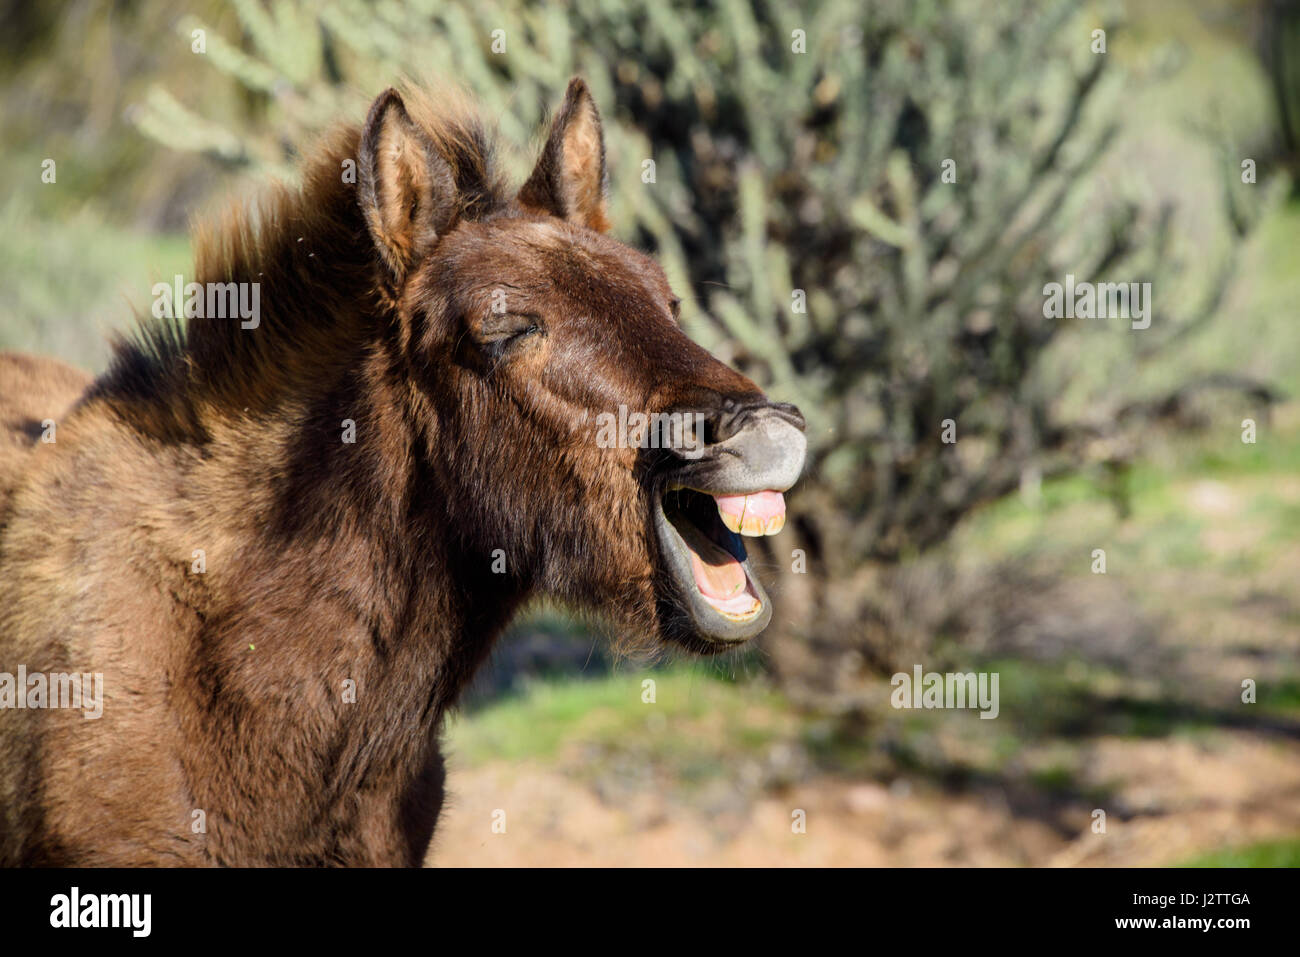 Les jeunes sauvages burro riant et montrant les dents. Partie d'une grande bande de chevaux sauvages résidant à l'extérieur de Phoenix, AZ Banque D'Images